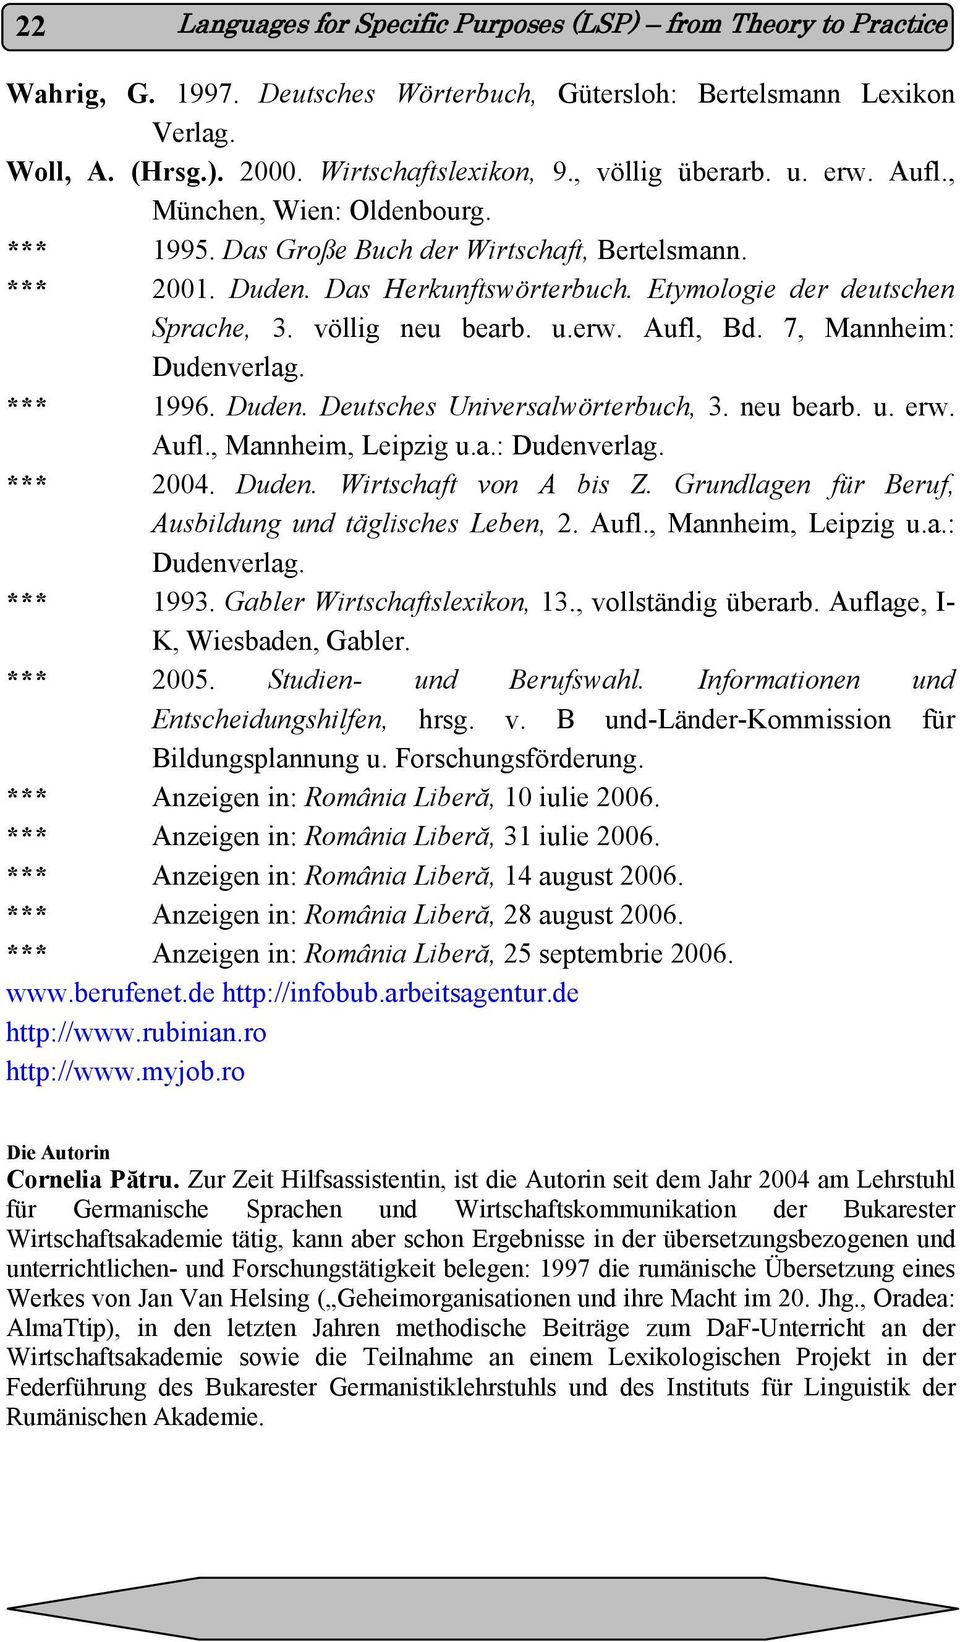 völlig neu bearb. u.erw. Aufl, Bd. 7, Mannheim: Dudenverlag. *** 1996. Duden. Deutsches Universalwörterbuch, 3. neu bearb. u. erw. Aufl., Mannheim, Leipzig u.a.: Dudenverlag. *** 2004. Duden. Wirtschaft von A bis Z.